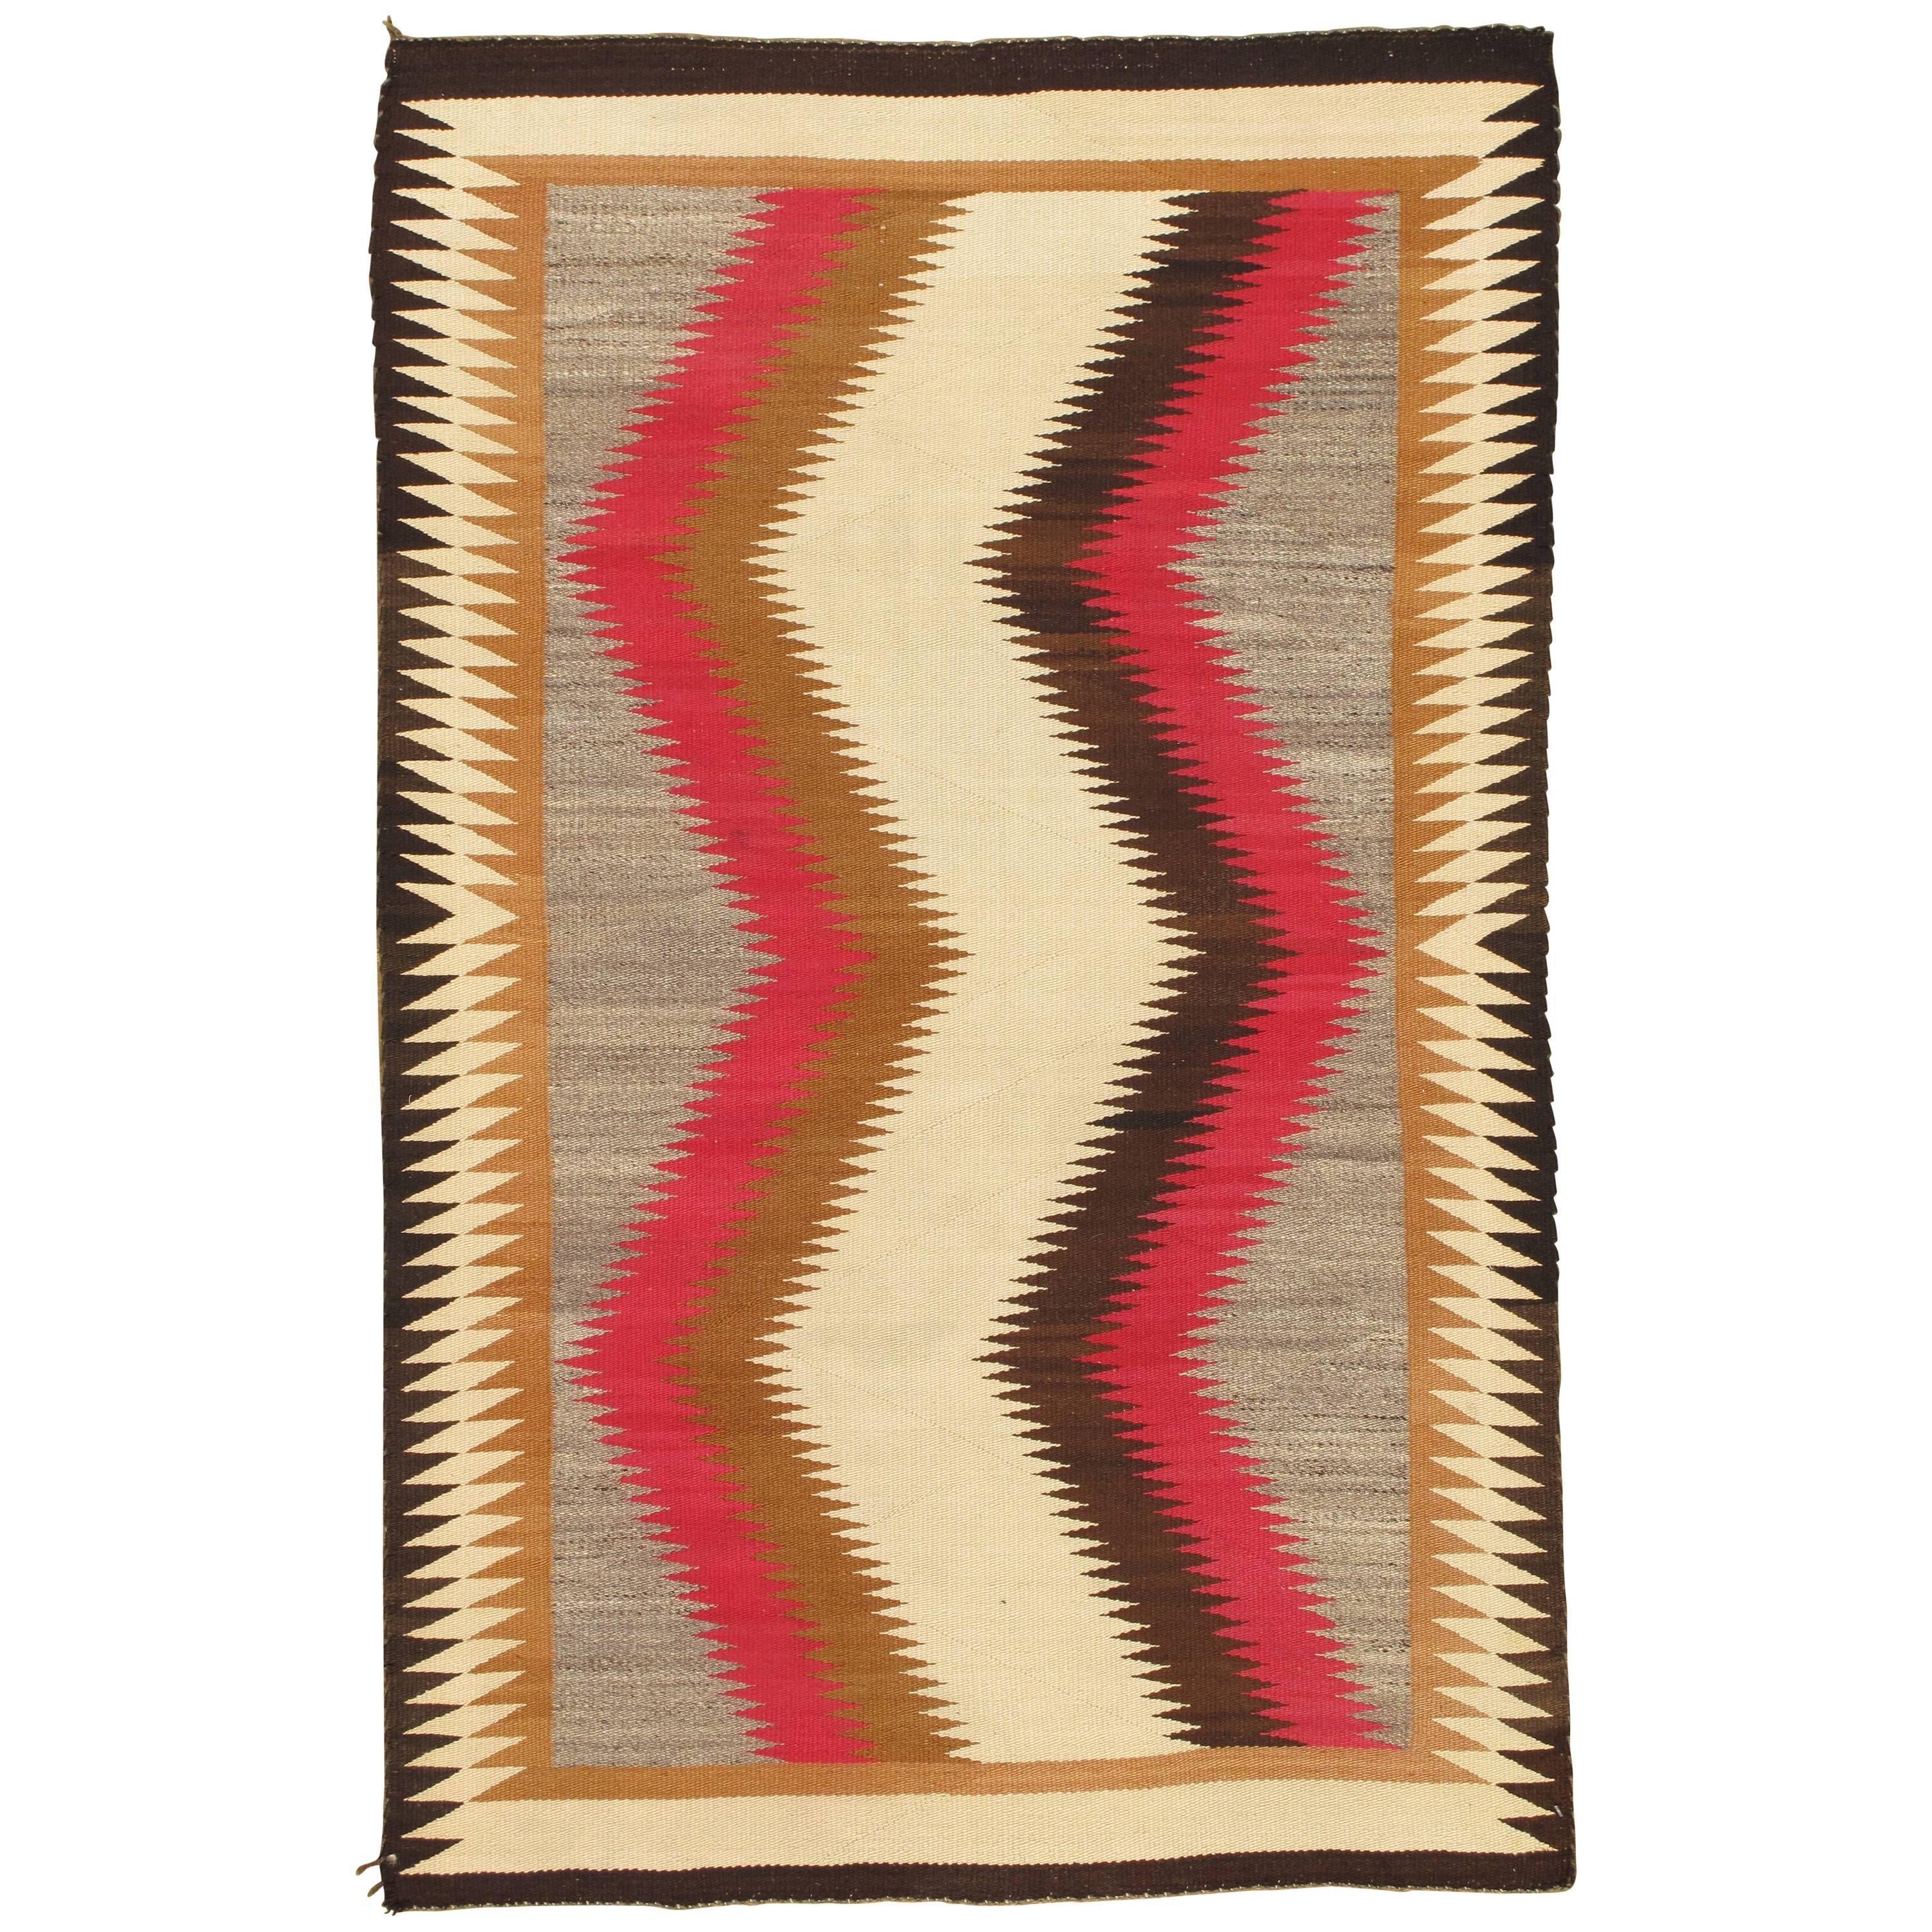 Vintage Navajo Rug, Handmade Kilim Rug, Brown, Red, Beige, Tan, Storm Pattern